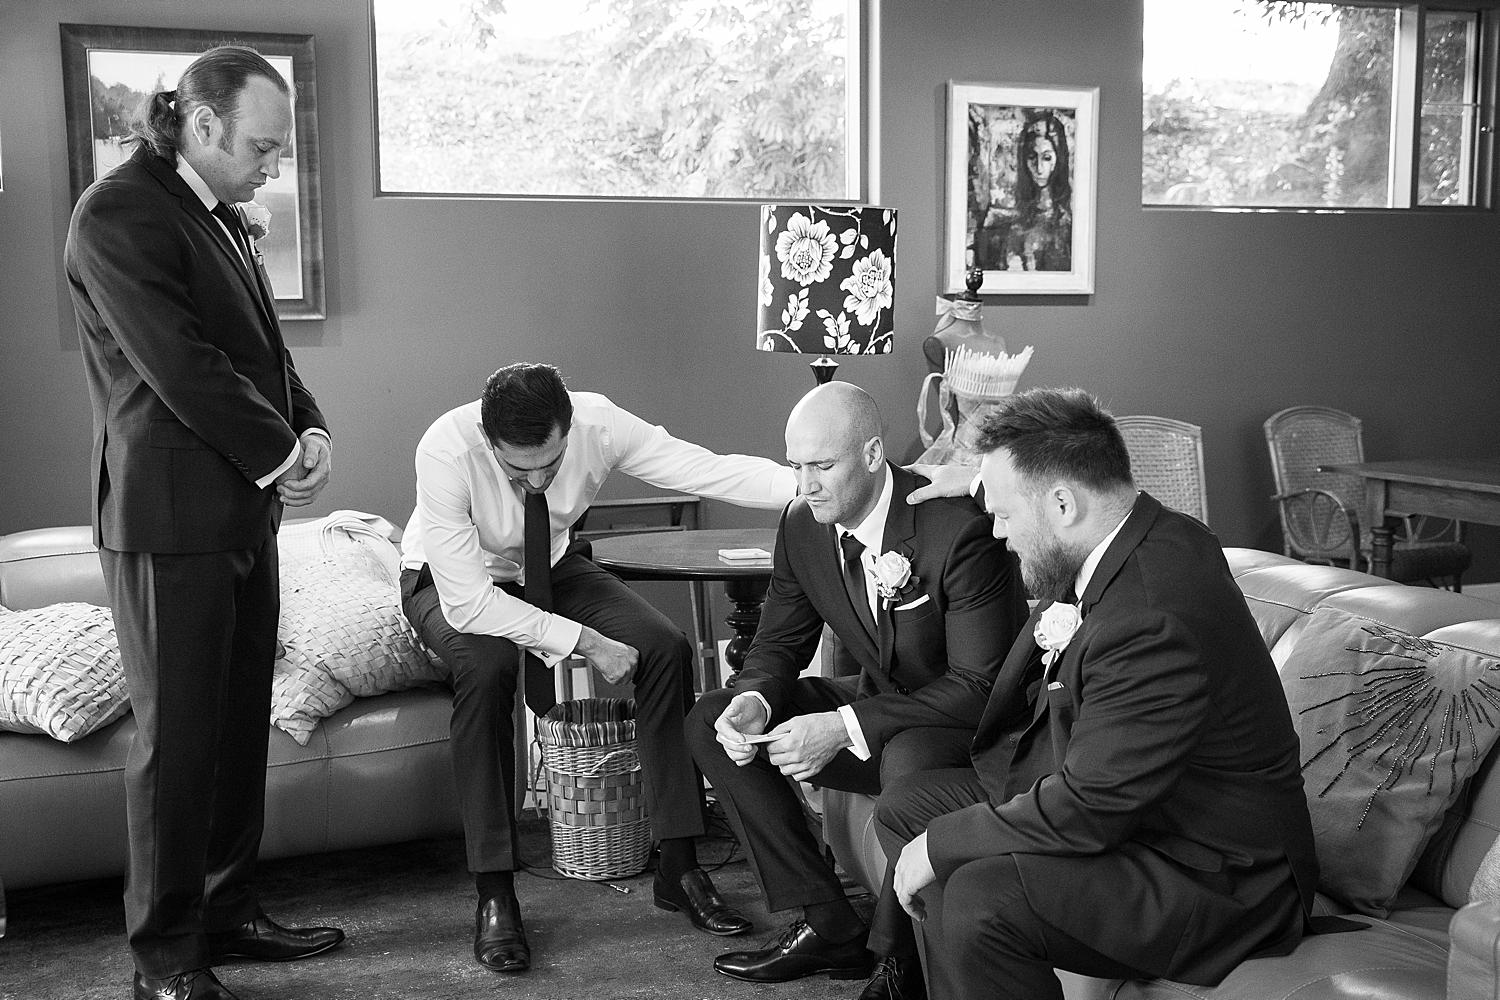 adelaide wedding photography, groom praying with groomsmen